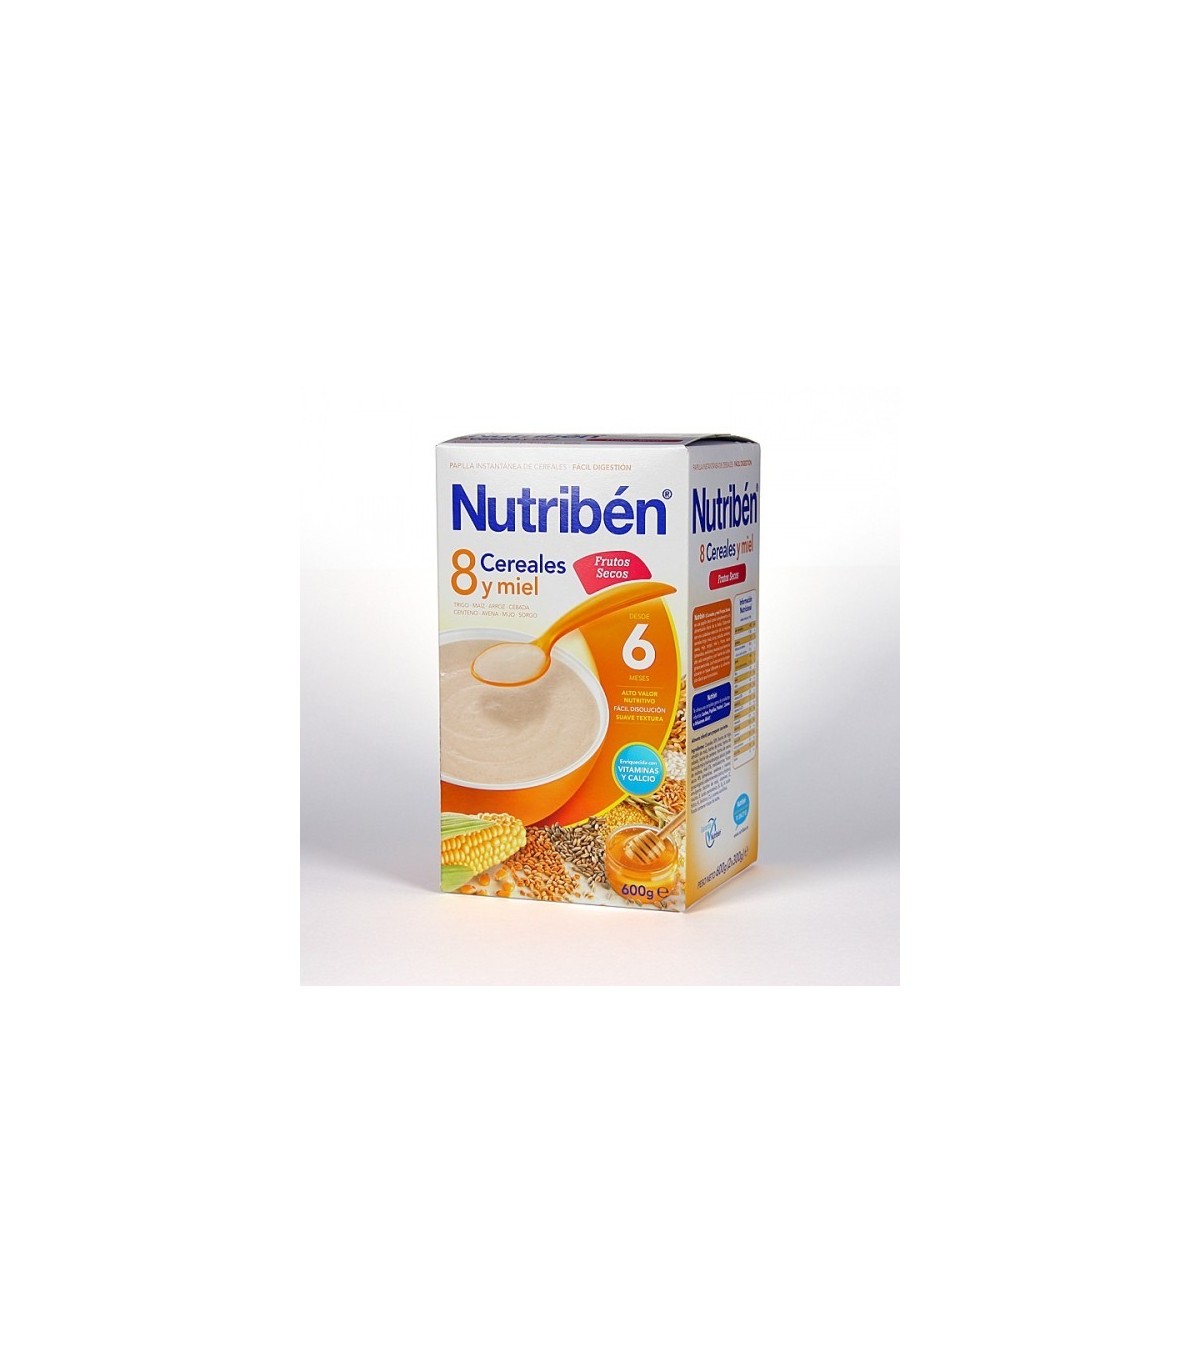 Comprar Nutriben Cereales Sin Gluten-Farmacia Subirats